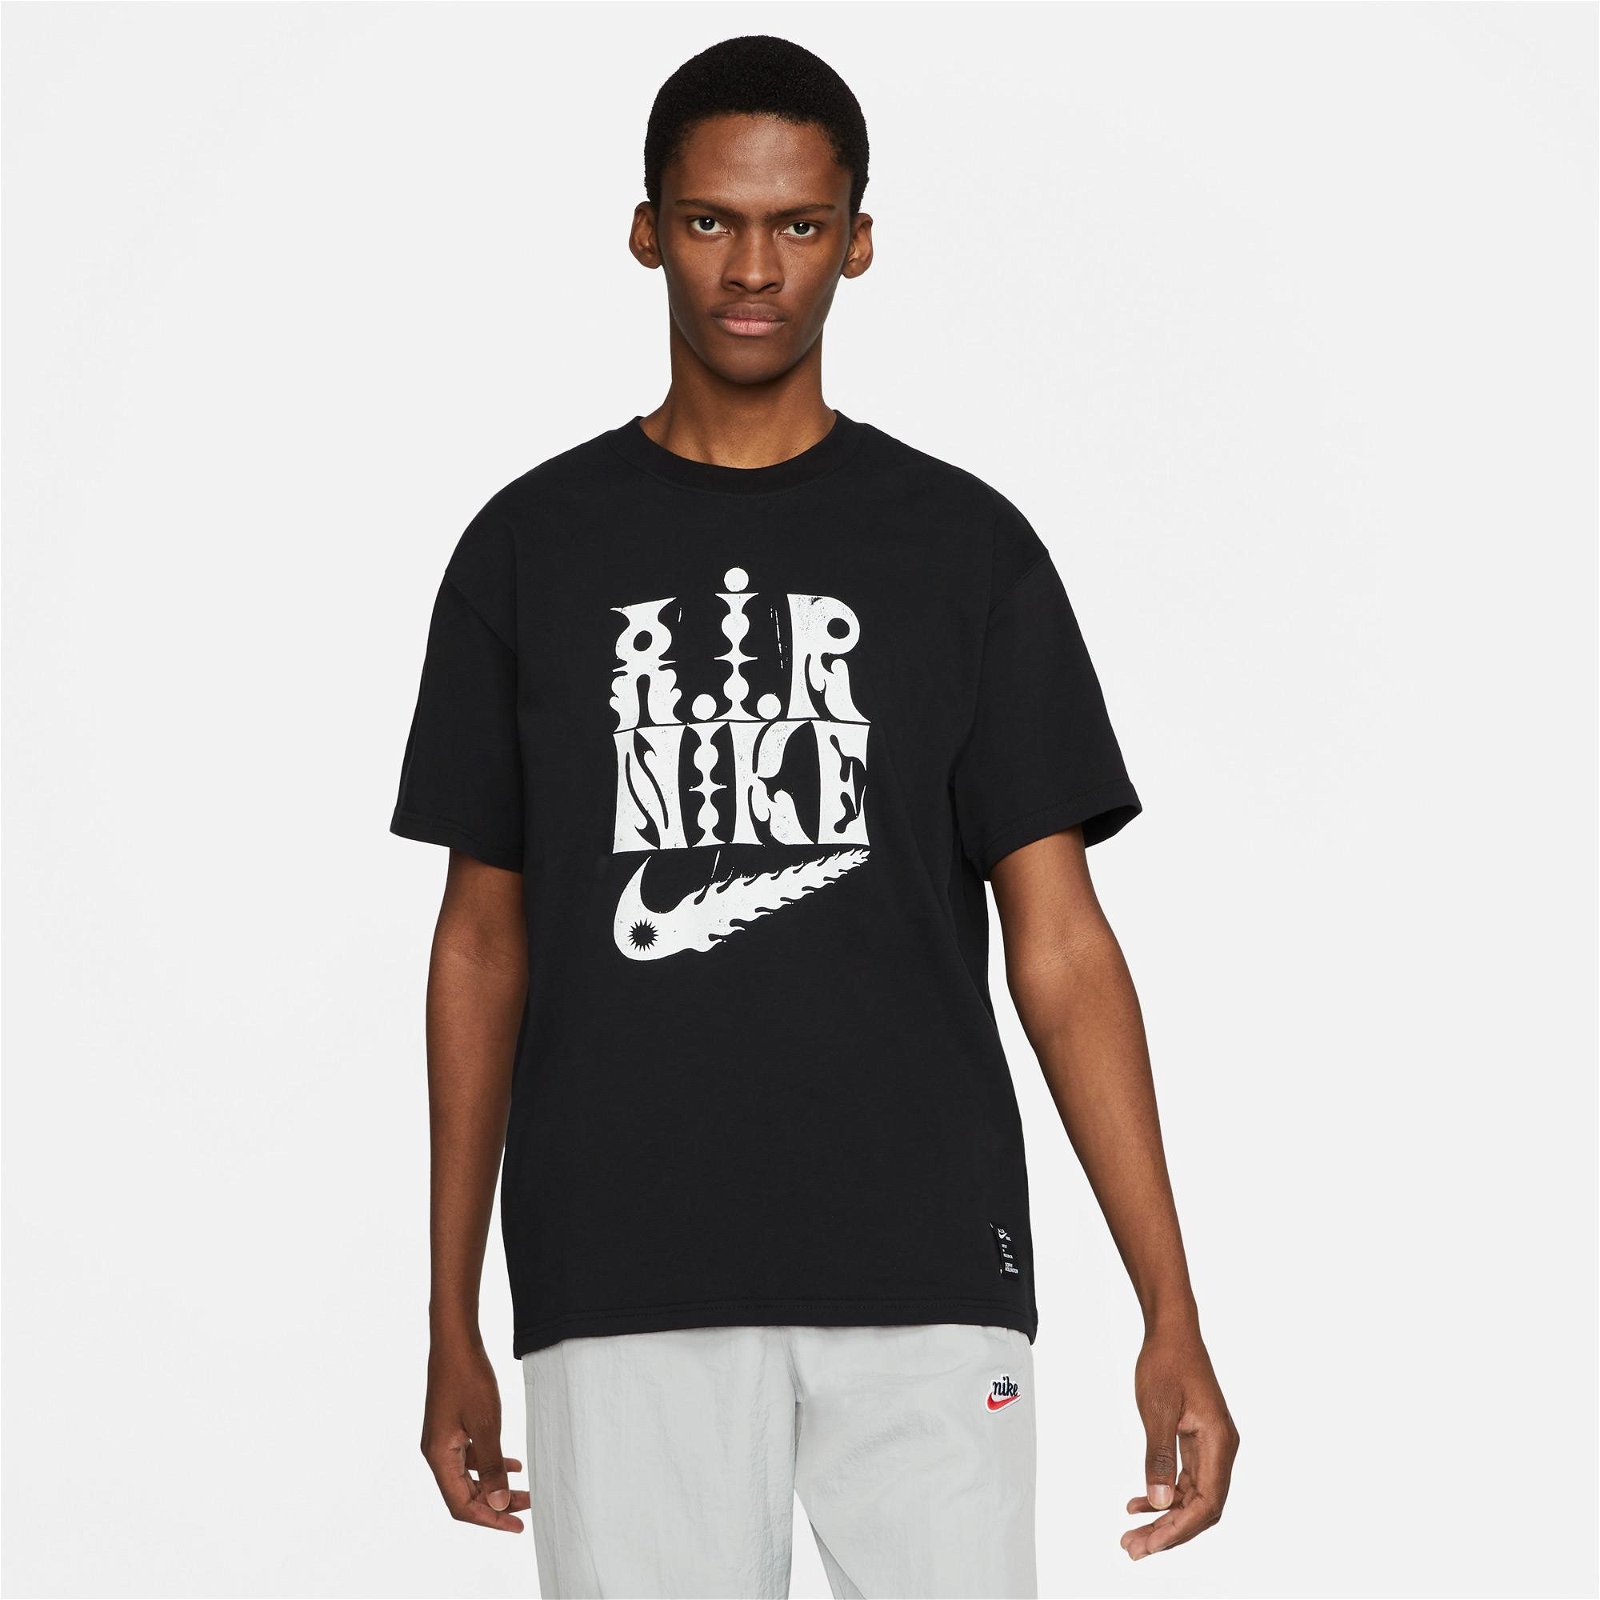 Nike Sportswear Sophy Hollington Air Erkek Siyah T-Shirt